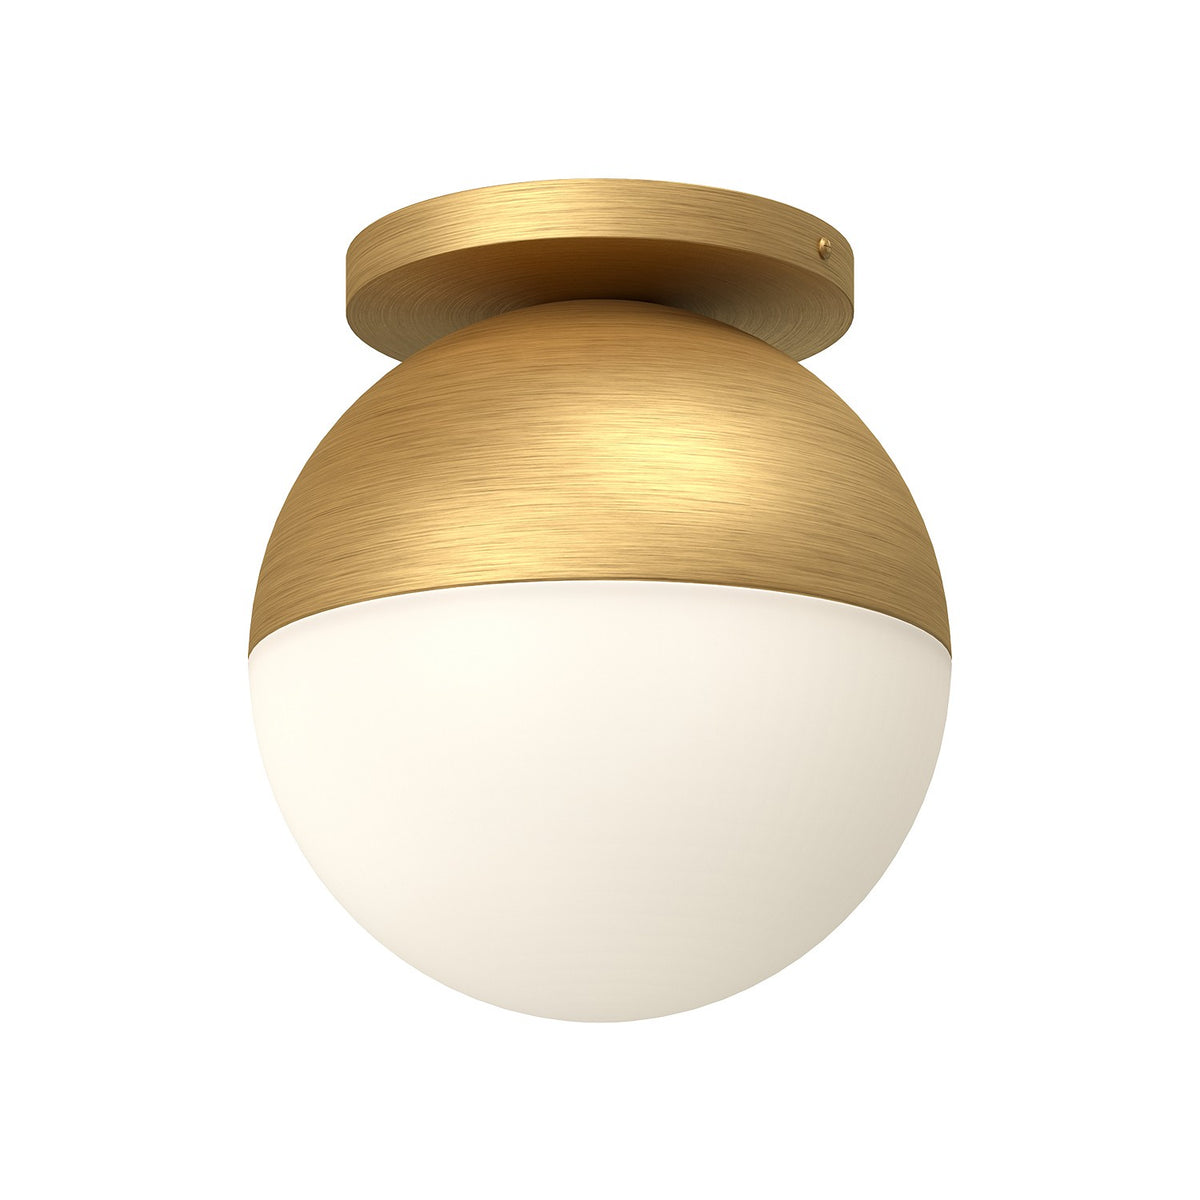 Kuzco Lighting - FM58310-BG/OP - One Light Flush Mount - Monae - Black/Opal Glass/Brushed Gold/Opal Glass